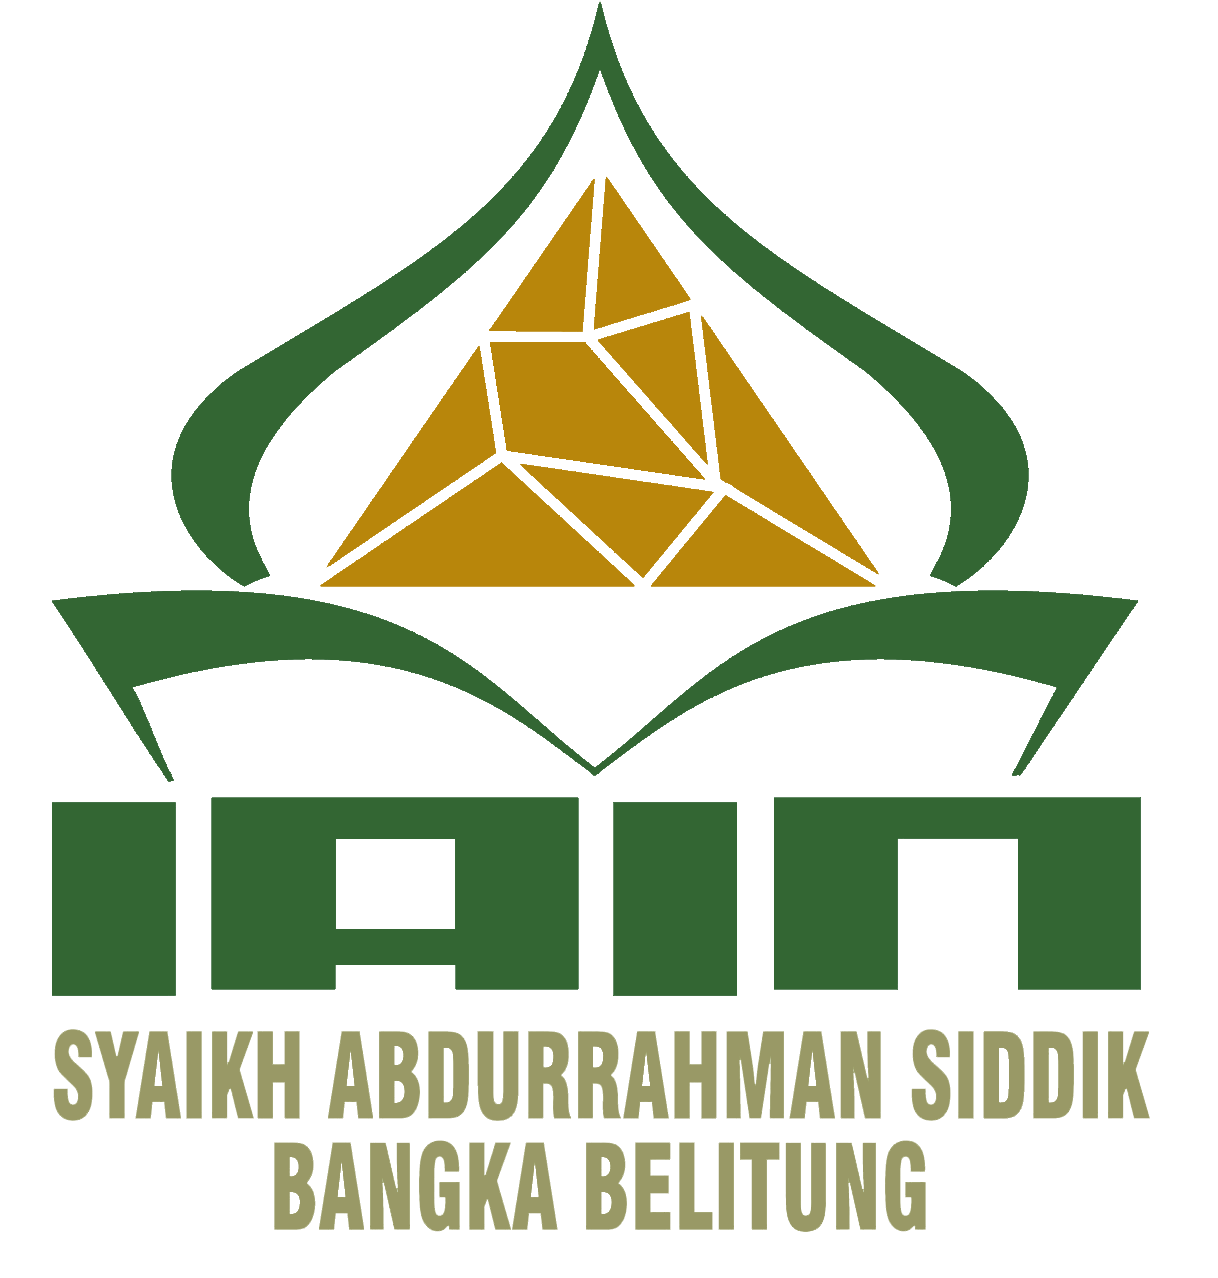 Institut Agama Islam Negeri Syaikh Abdurrahman Siddik Bangka Belitung